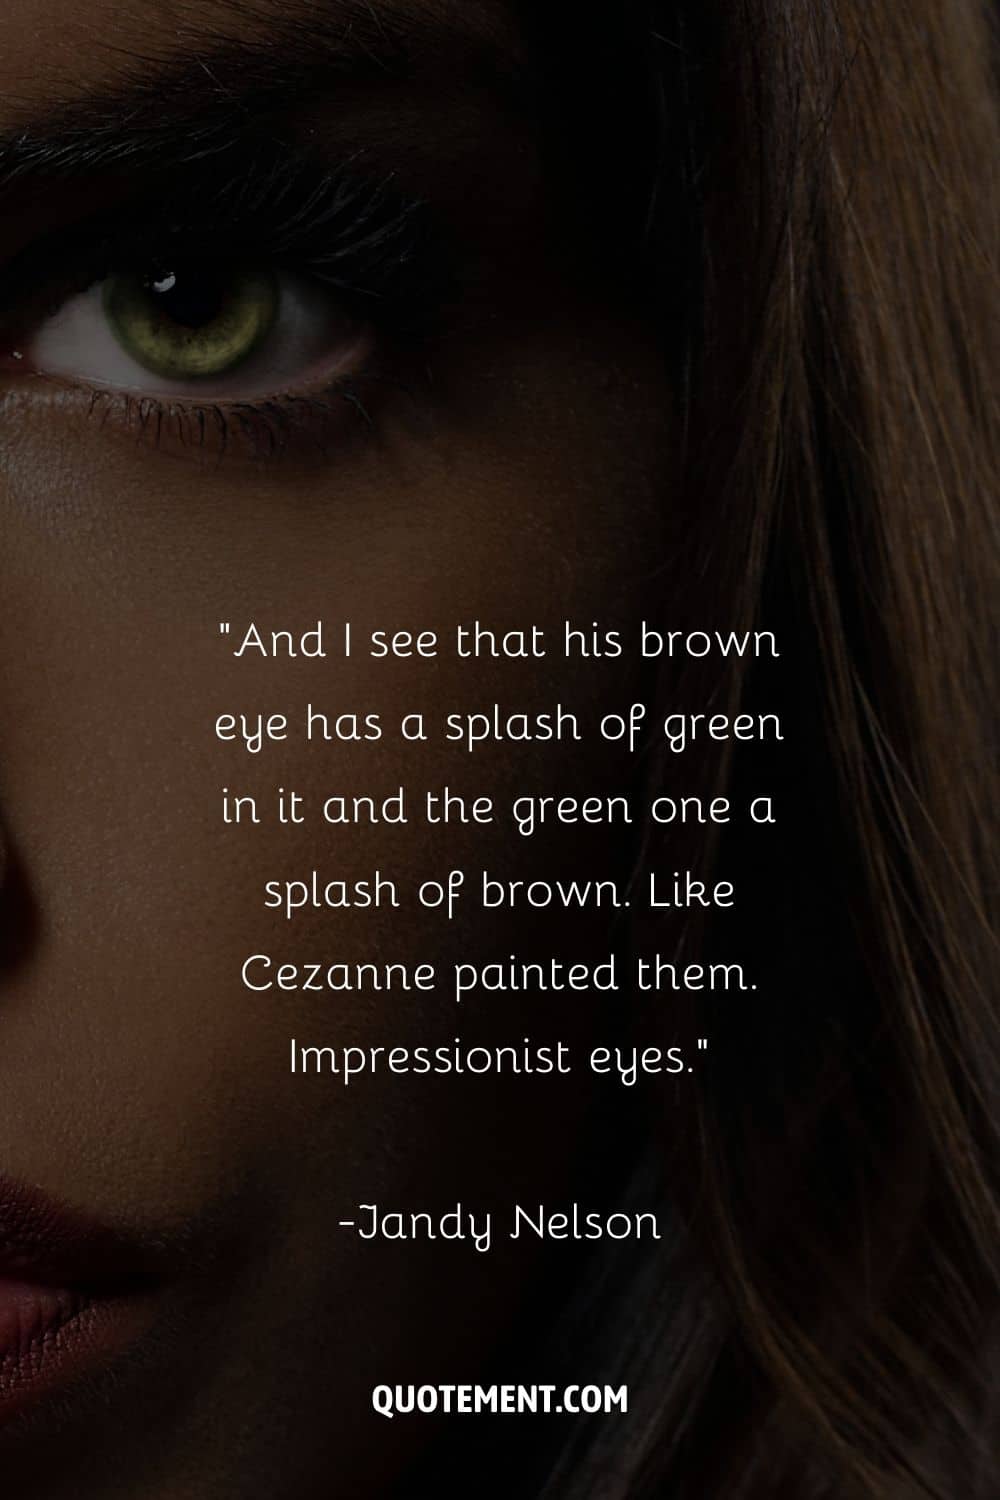 primer plano de la cara de una mujer con hermosos ojos verdes